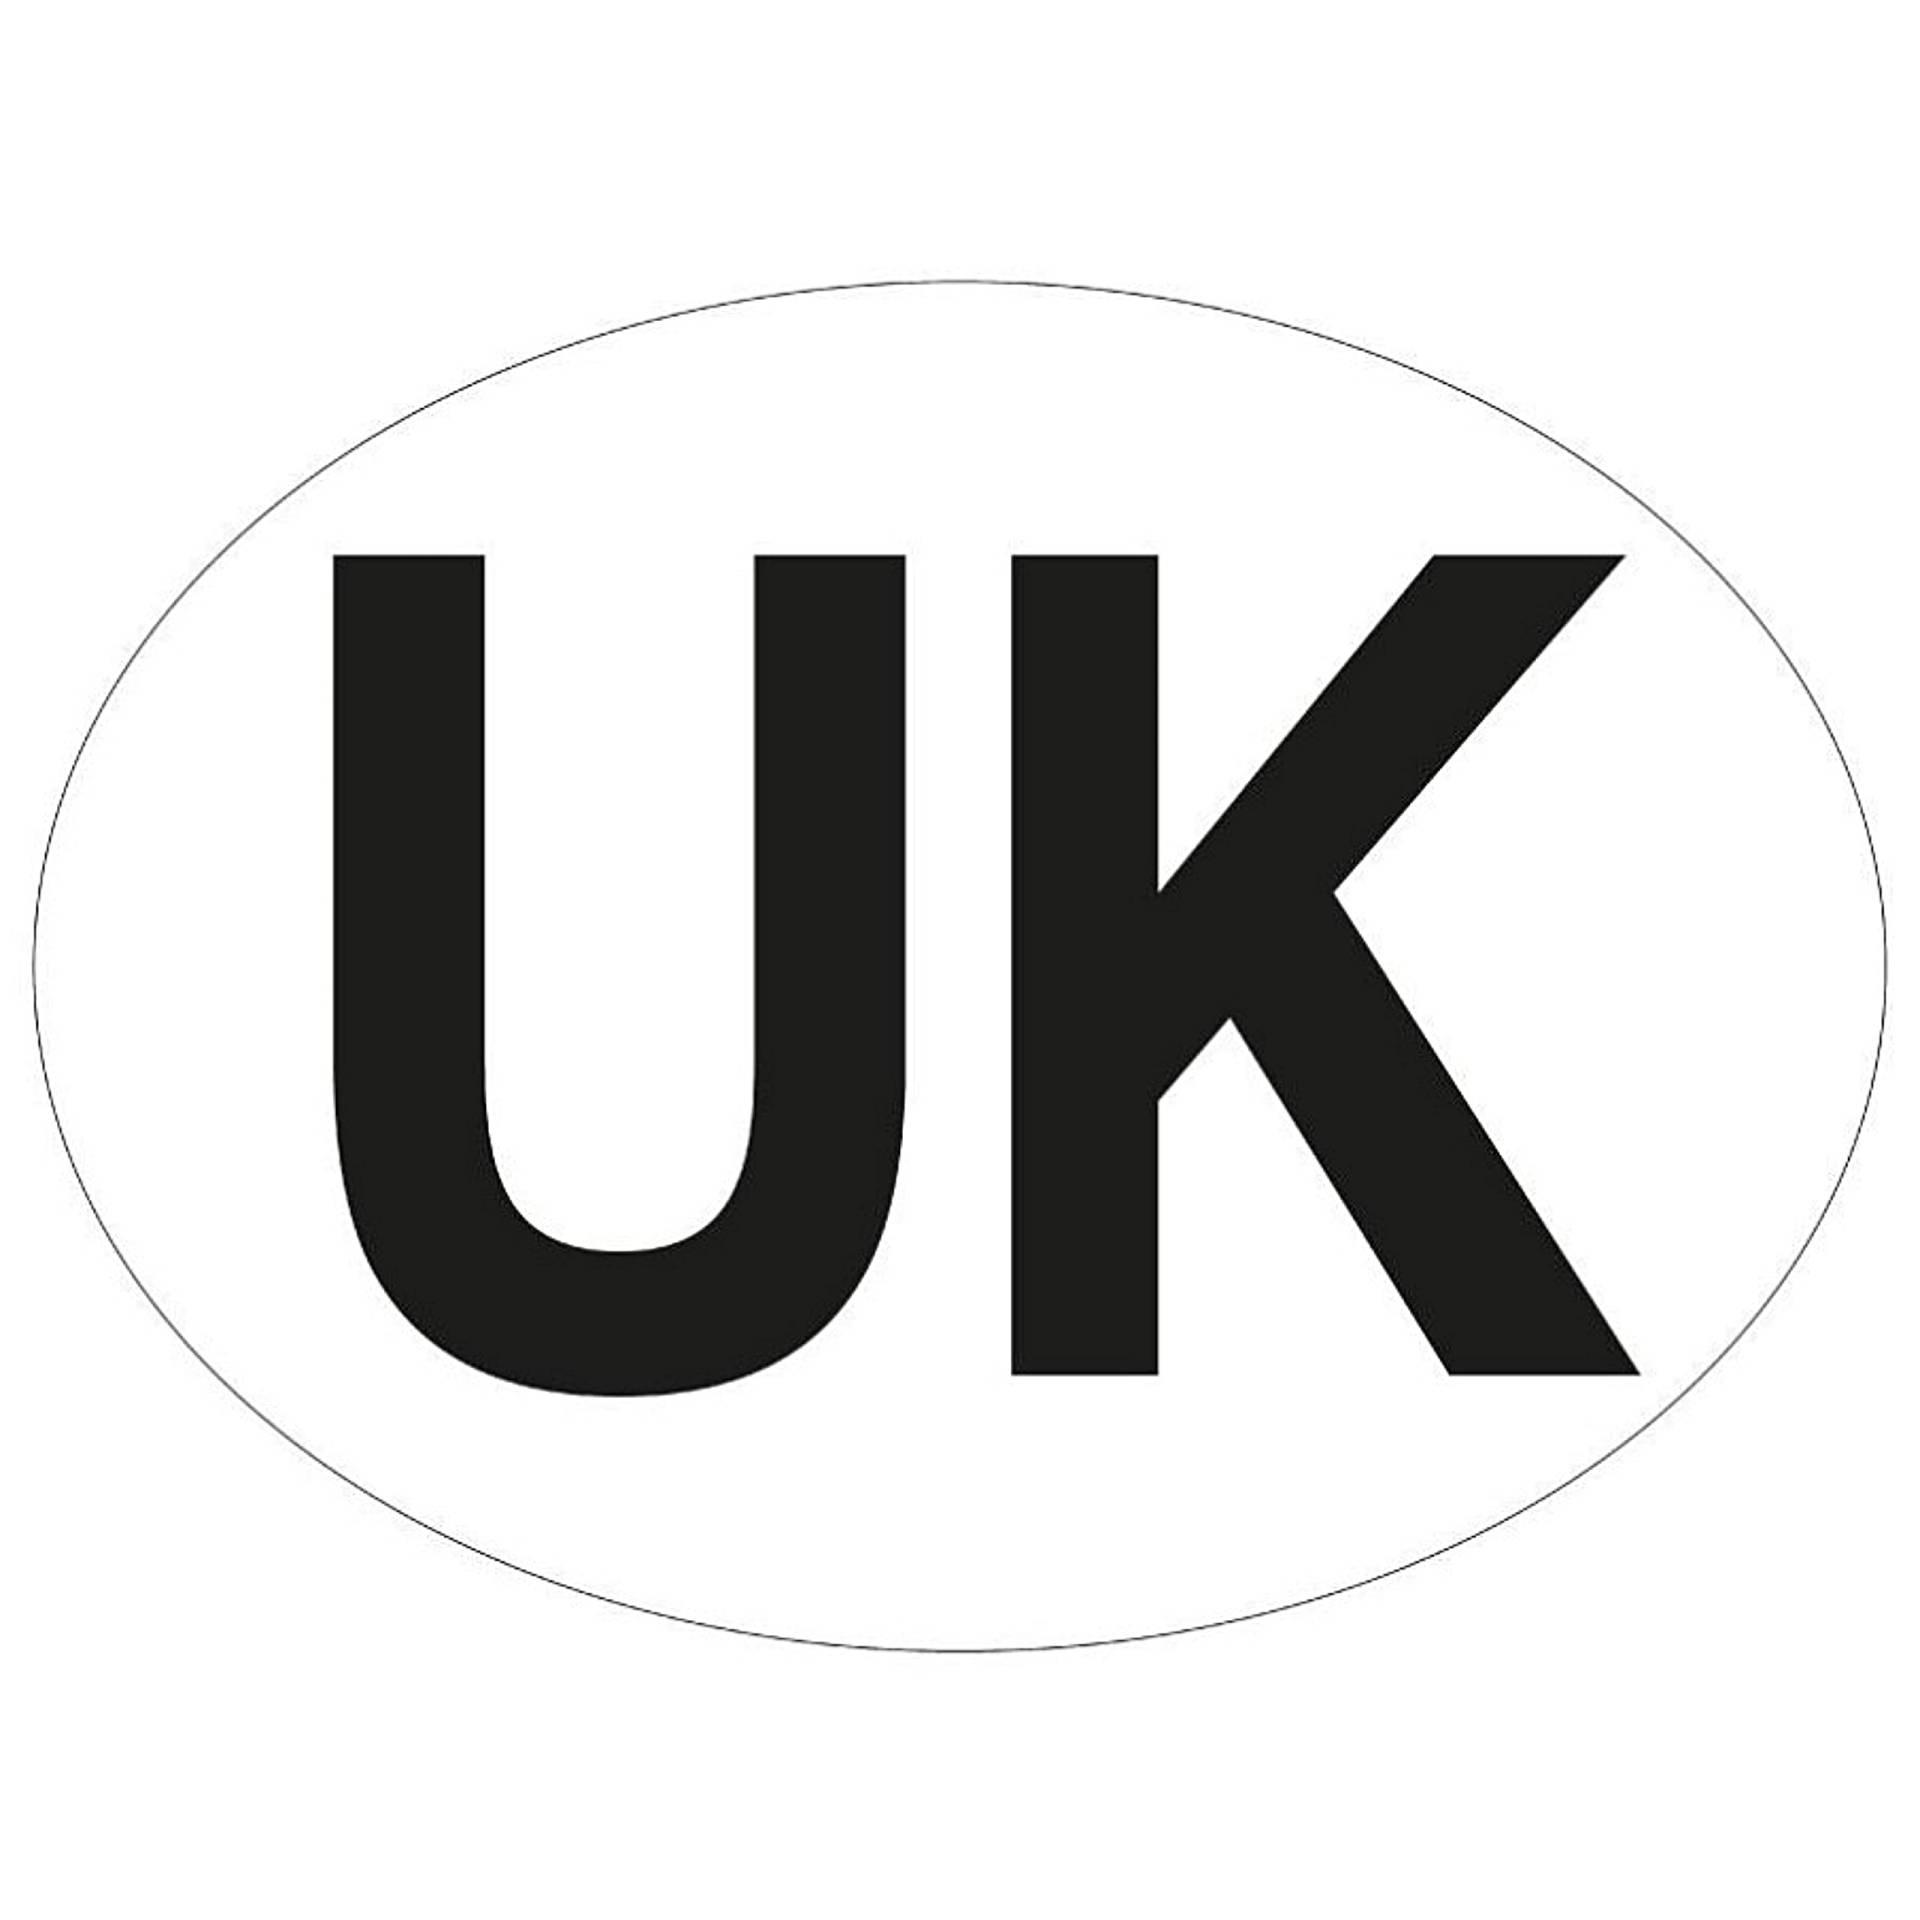 AA Vollmagnetischer britischer Anstecker für Autos, 210 x 190 mm, 2021 Rechtsverordnung für das Fahren in Frankreich und EU Ländern, schwarzer Text, weiße ovale Platte, 210 x 190 mm, 1 Stück von sakura